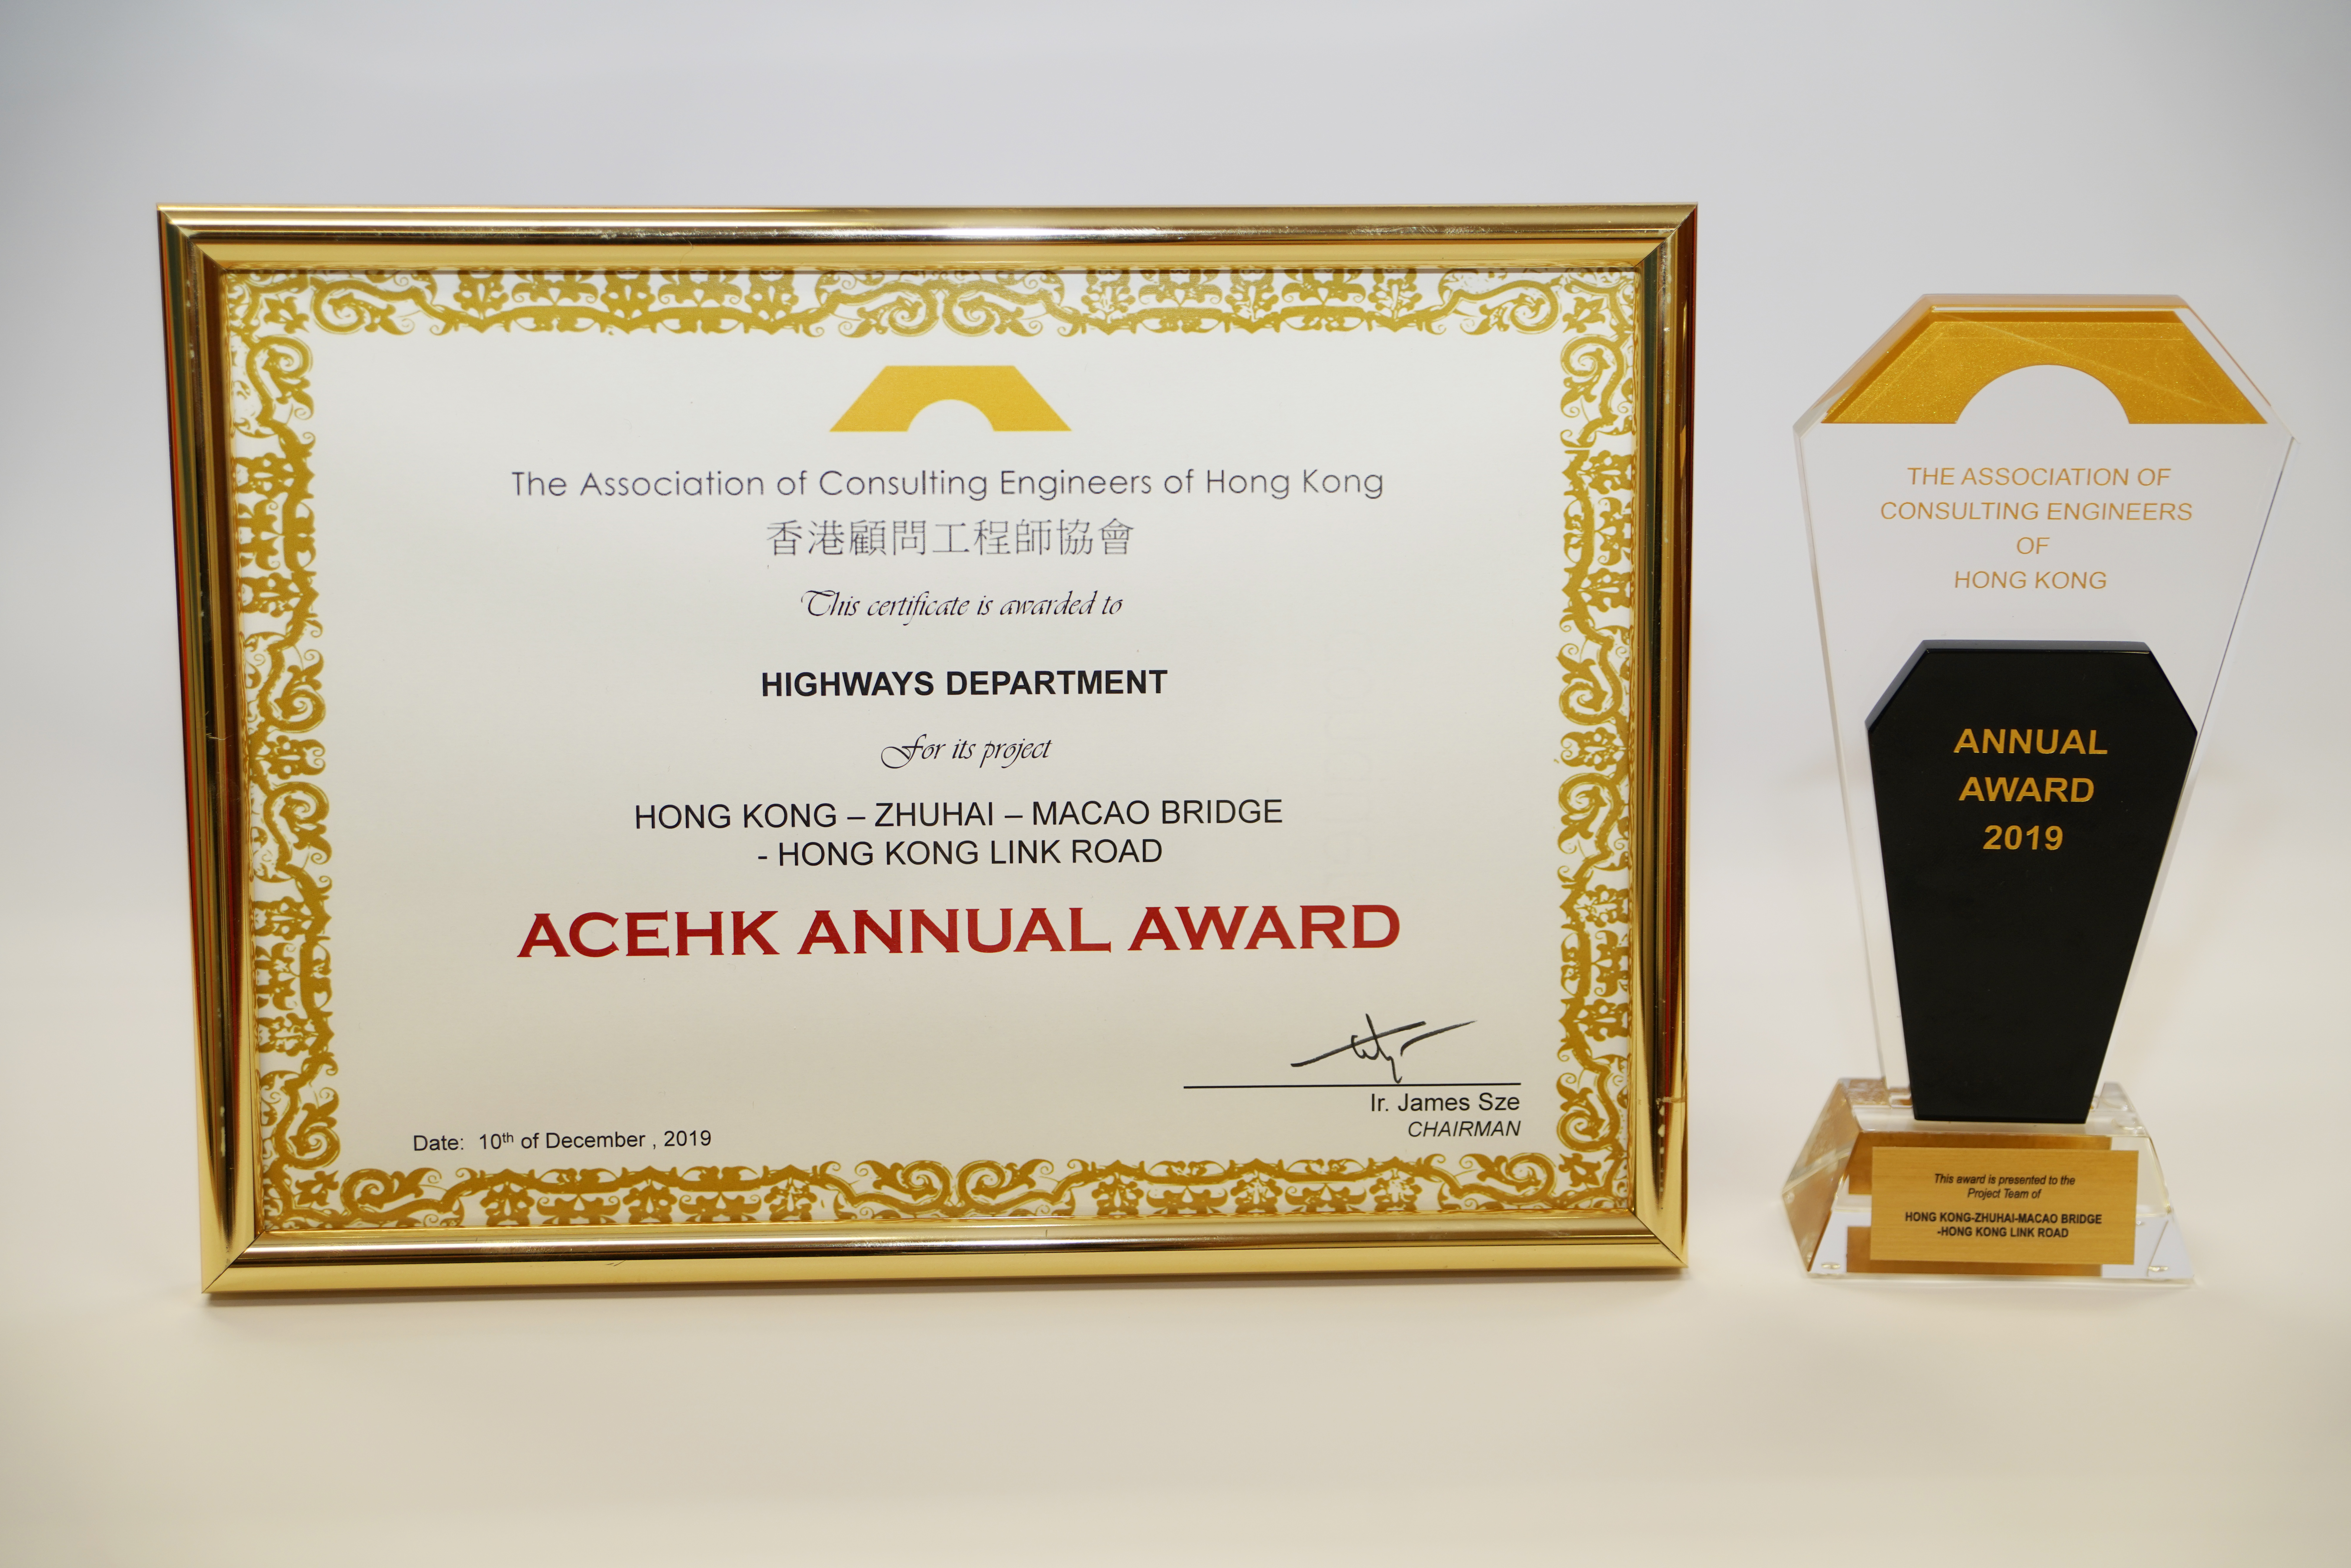 港珠澳大橋香港段香港連接路工程項目獲頒顧問工程師協會年獎2019。